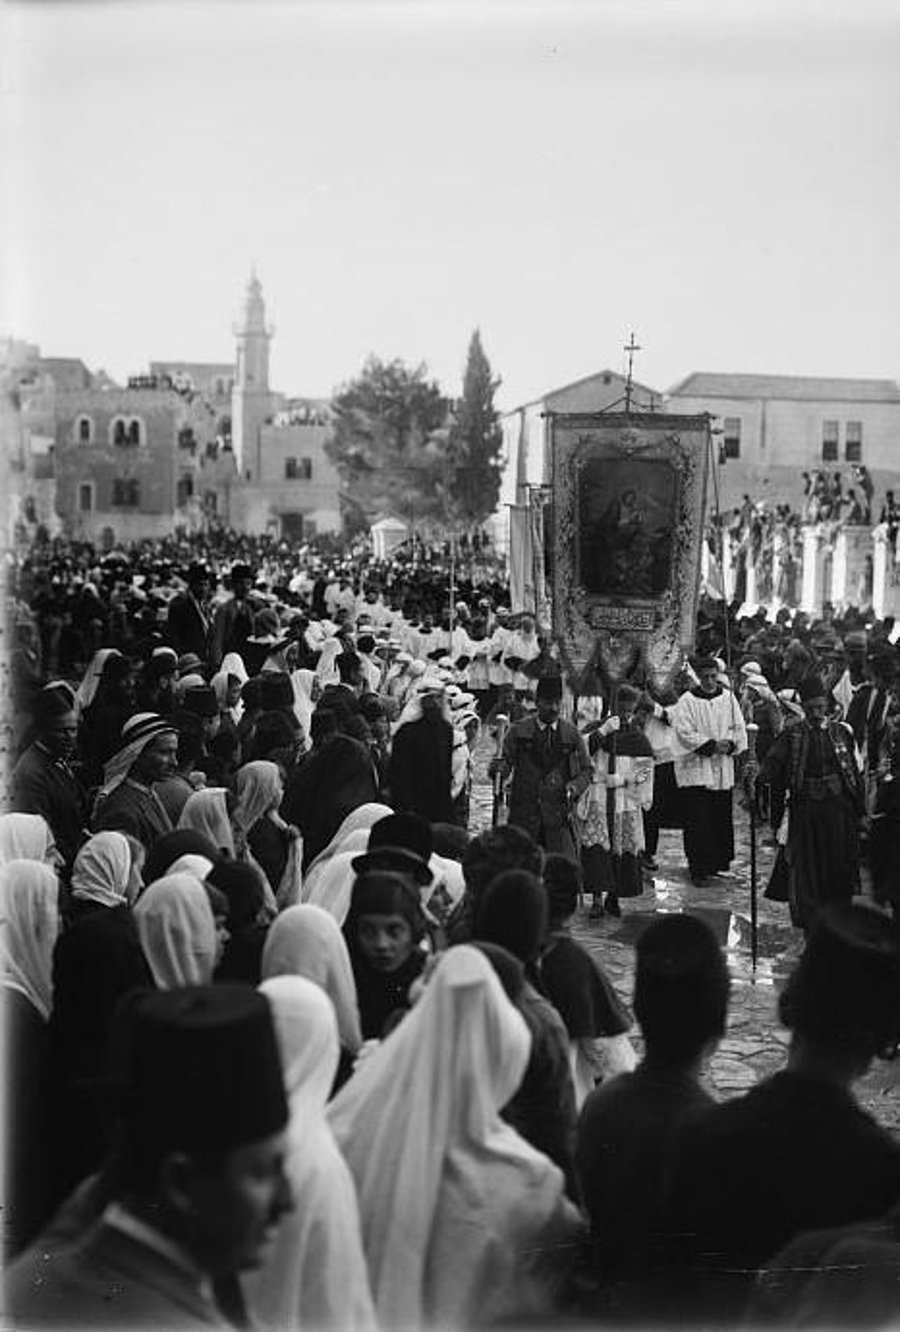 להבדיל, מצעד נוצרי בעיר בית לחם, בסביבות 1900